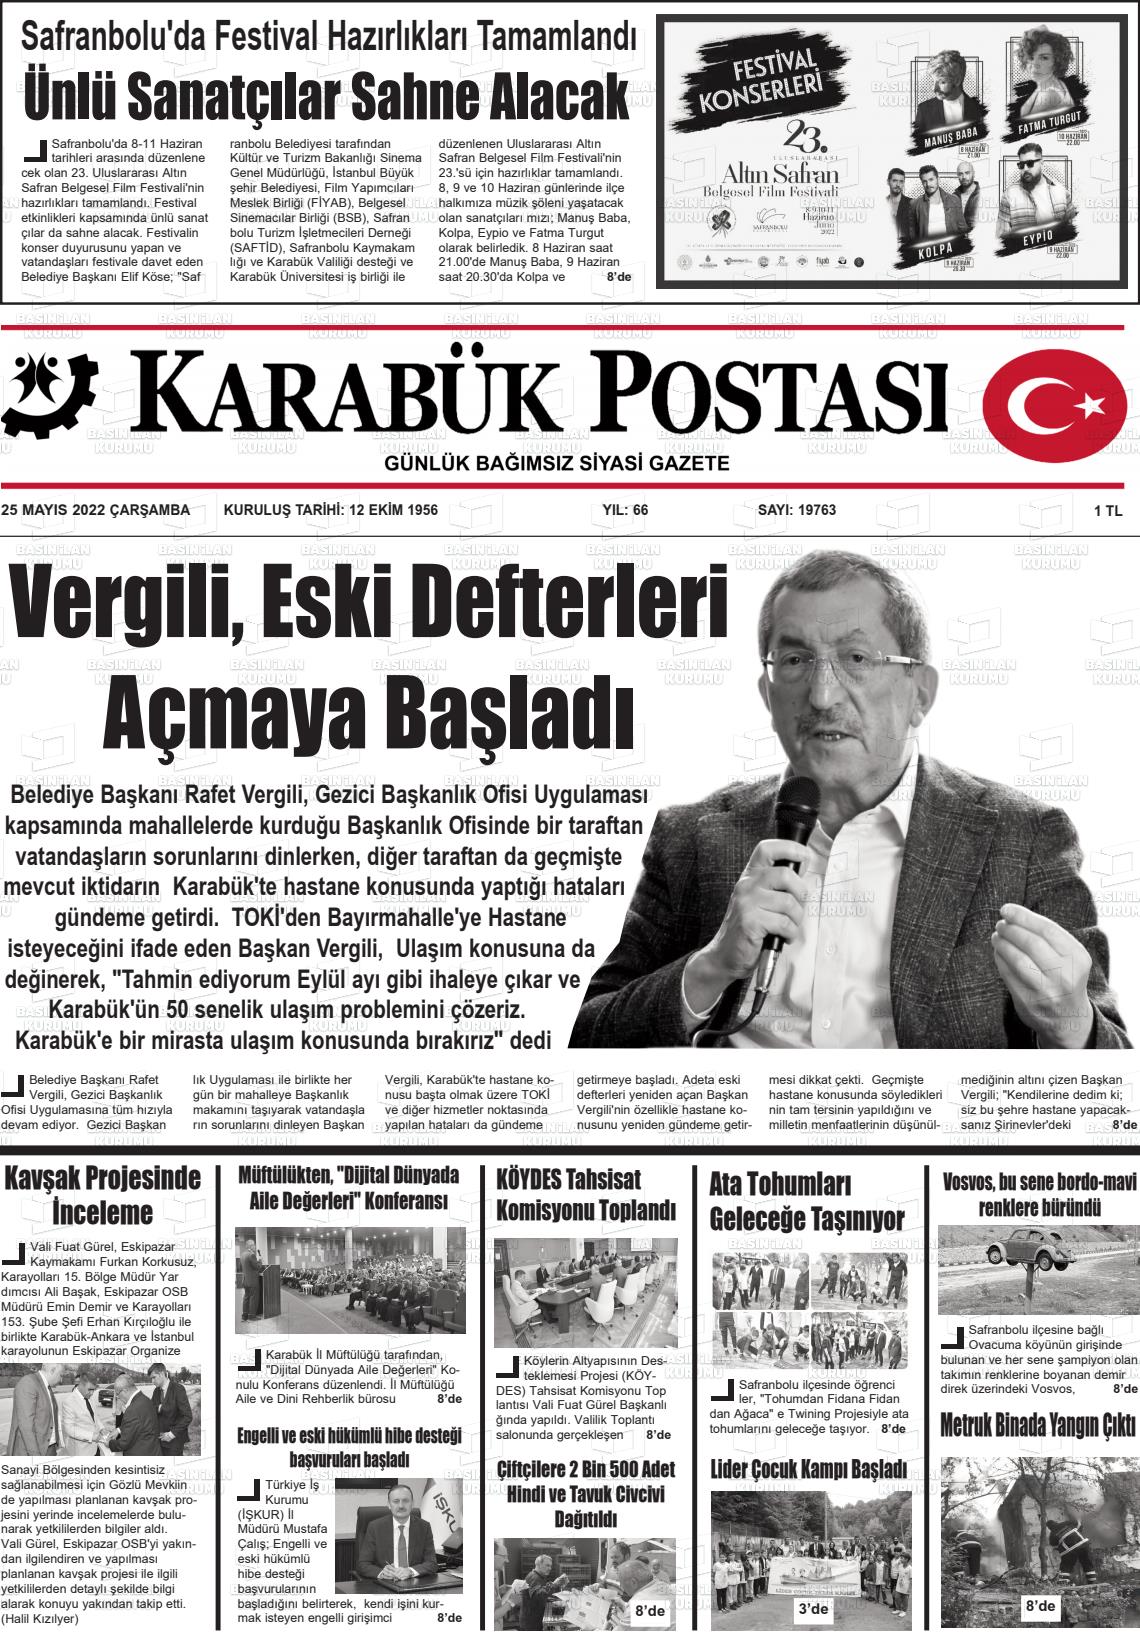 25 Mayıs 2022 Karabük Postası Gazete Manşeti